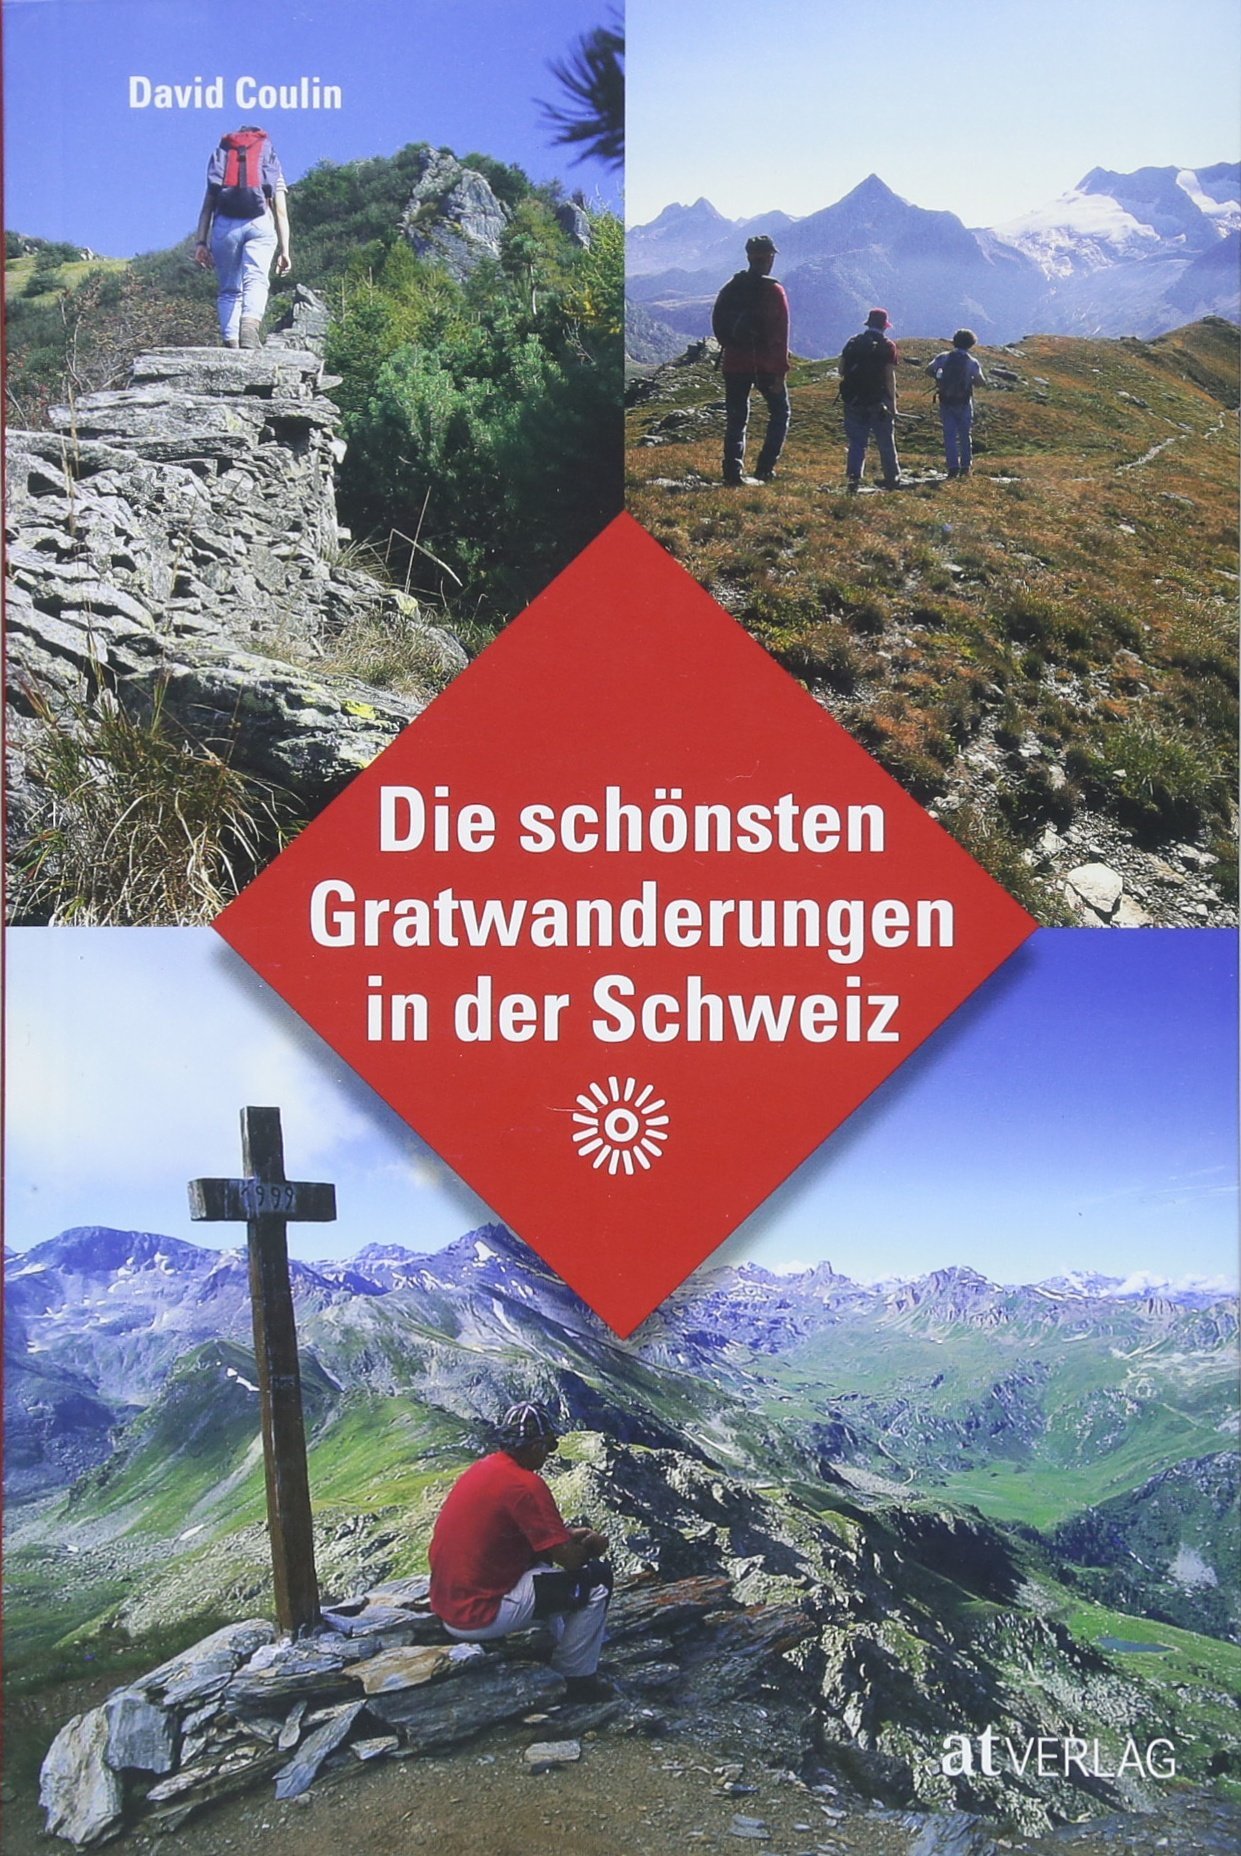 Die schönsten Gratwanderungen der Schweiz 9783038009740 David Coulin AT-Verlag   Wandelgidsen Zwitserland